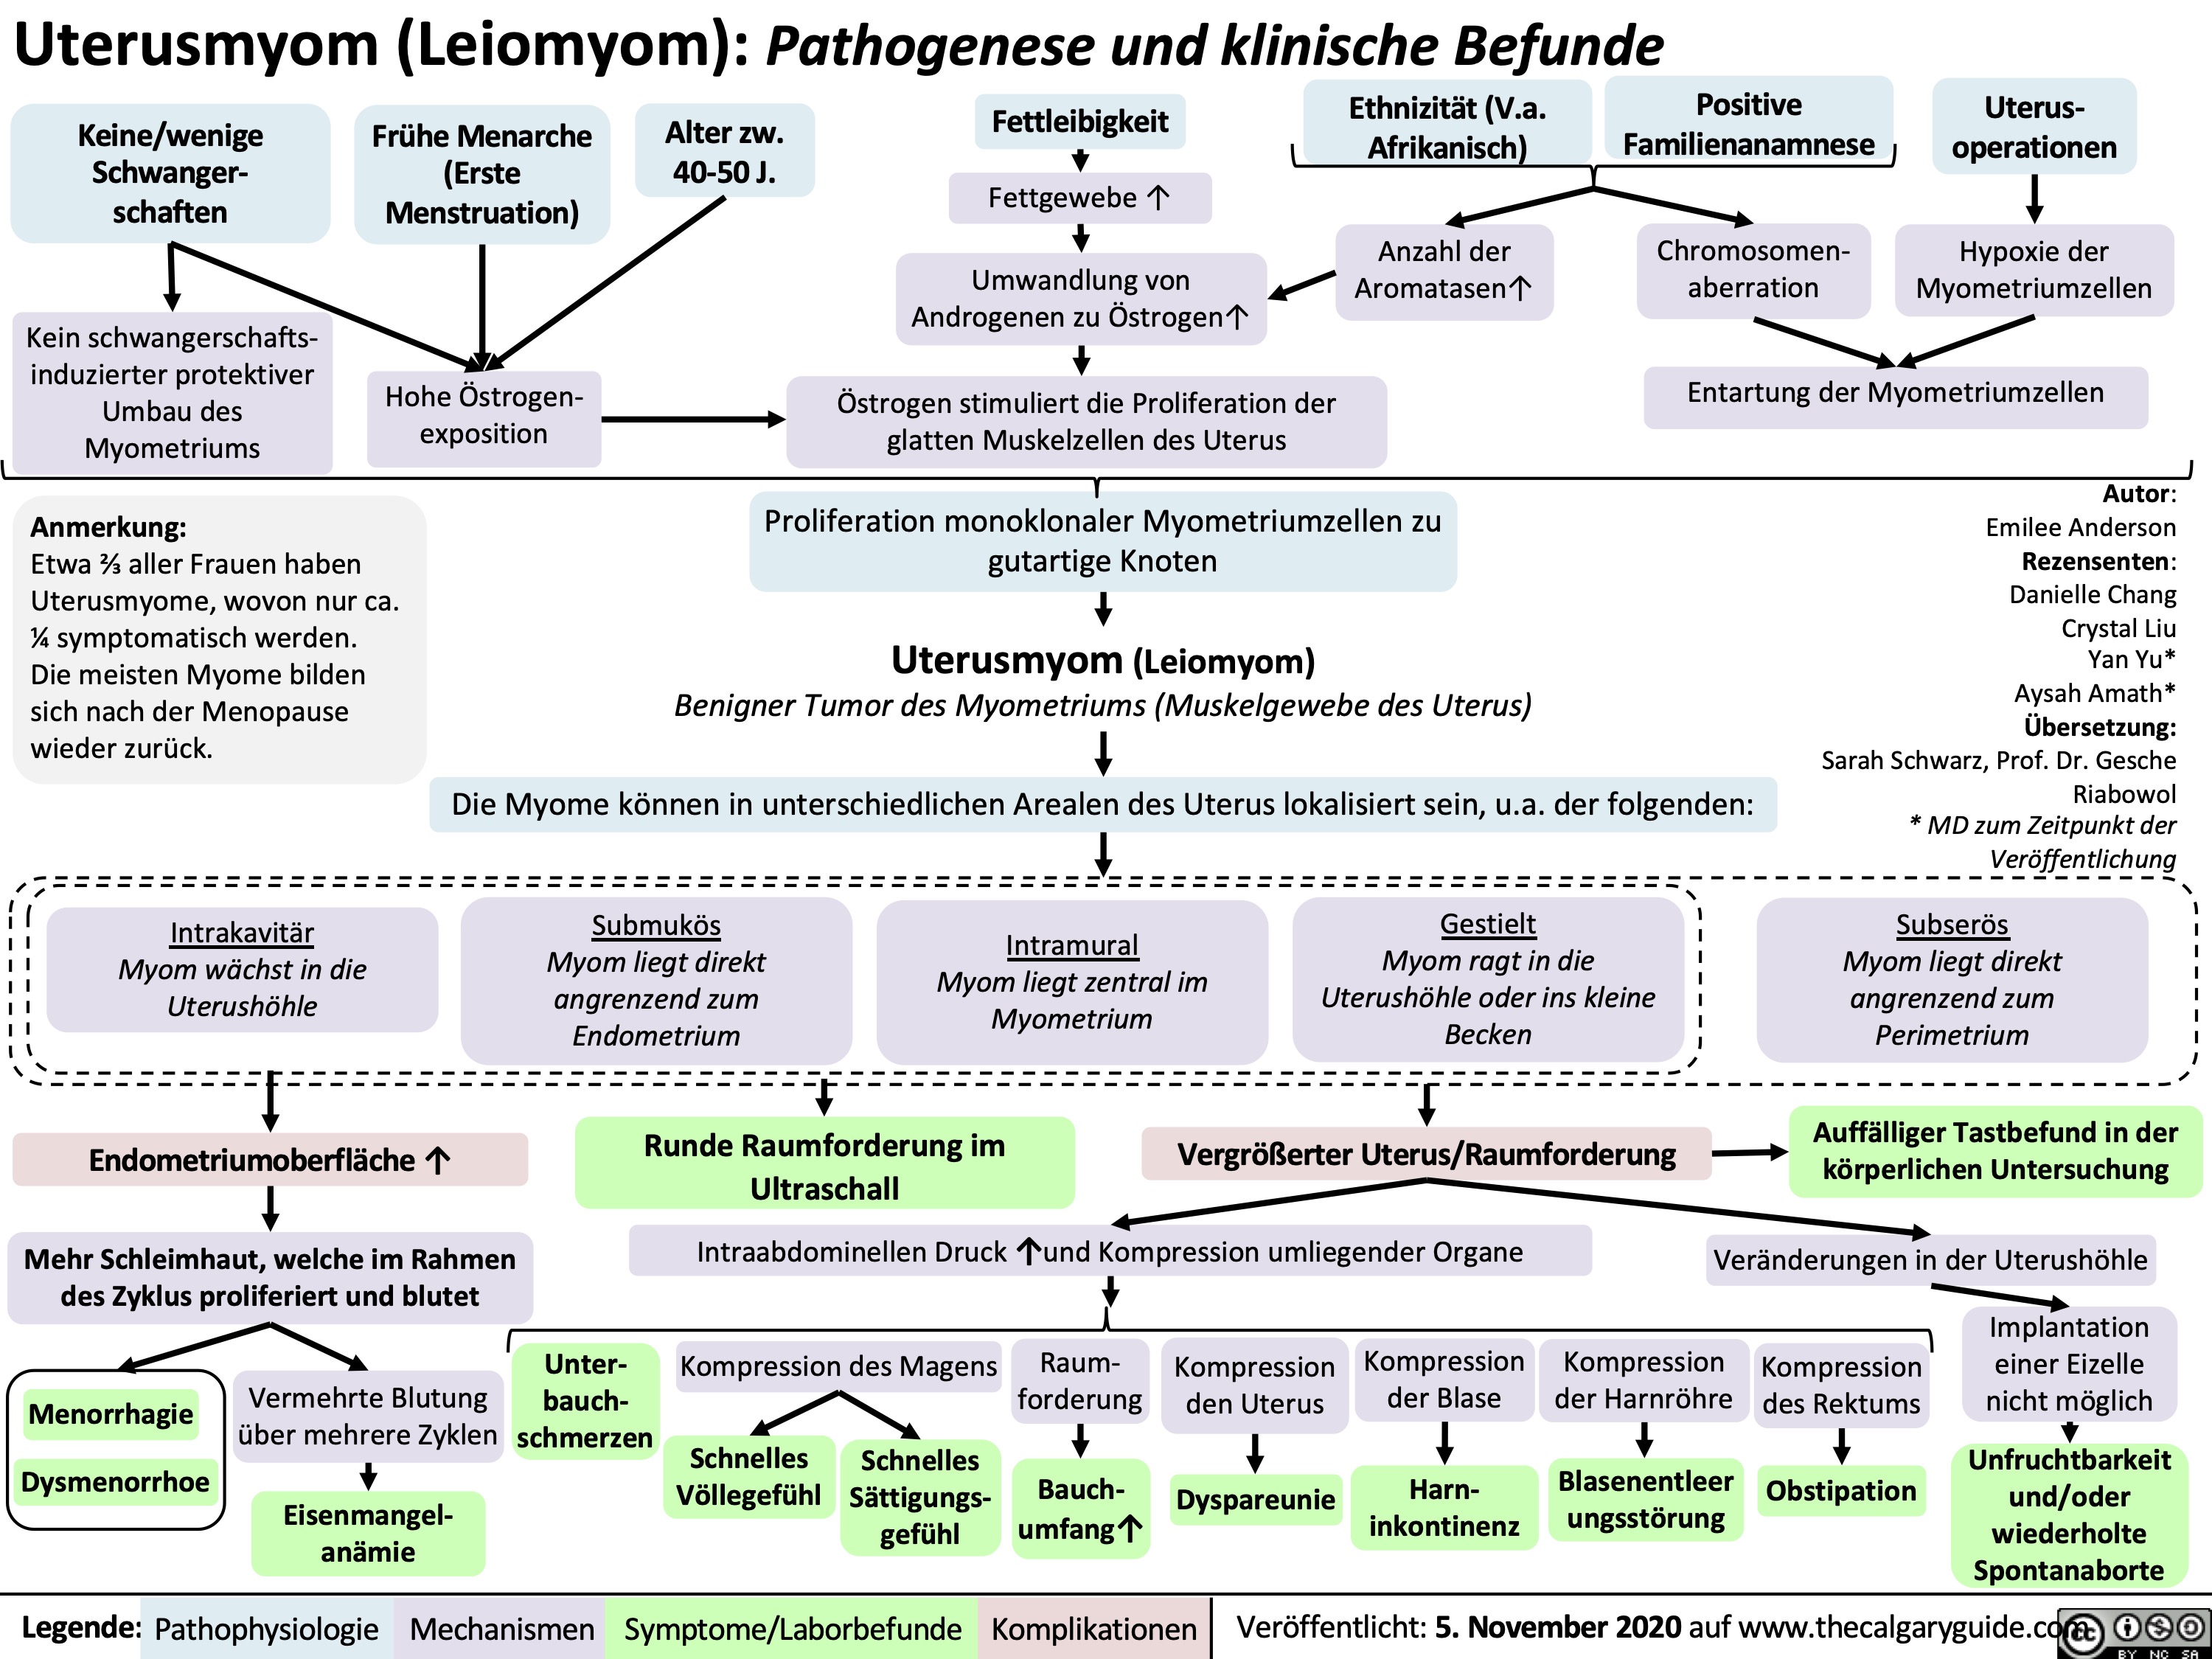 Uterusmyom (Leiomyom): Pathogenese und klinische Befunde